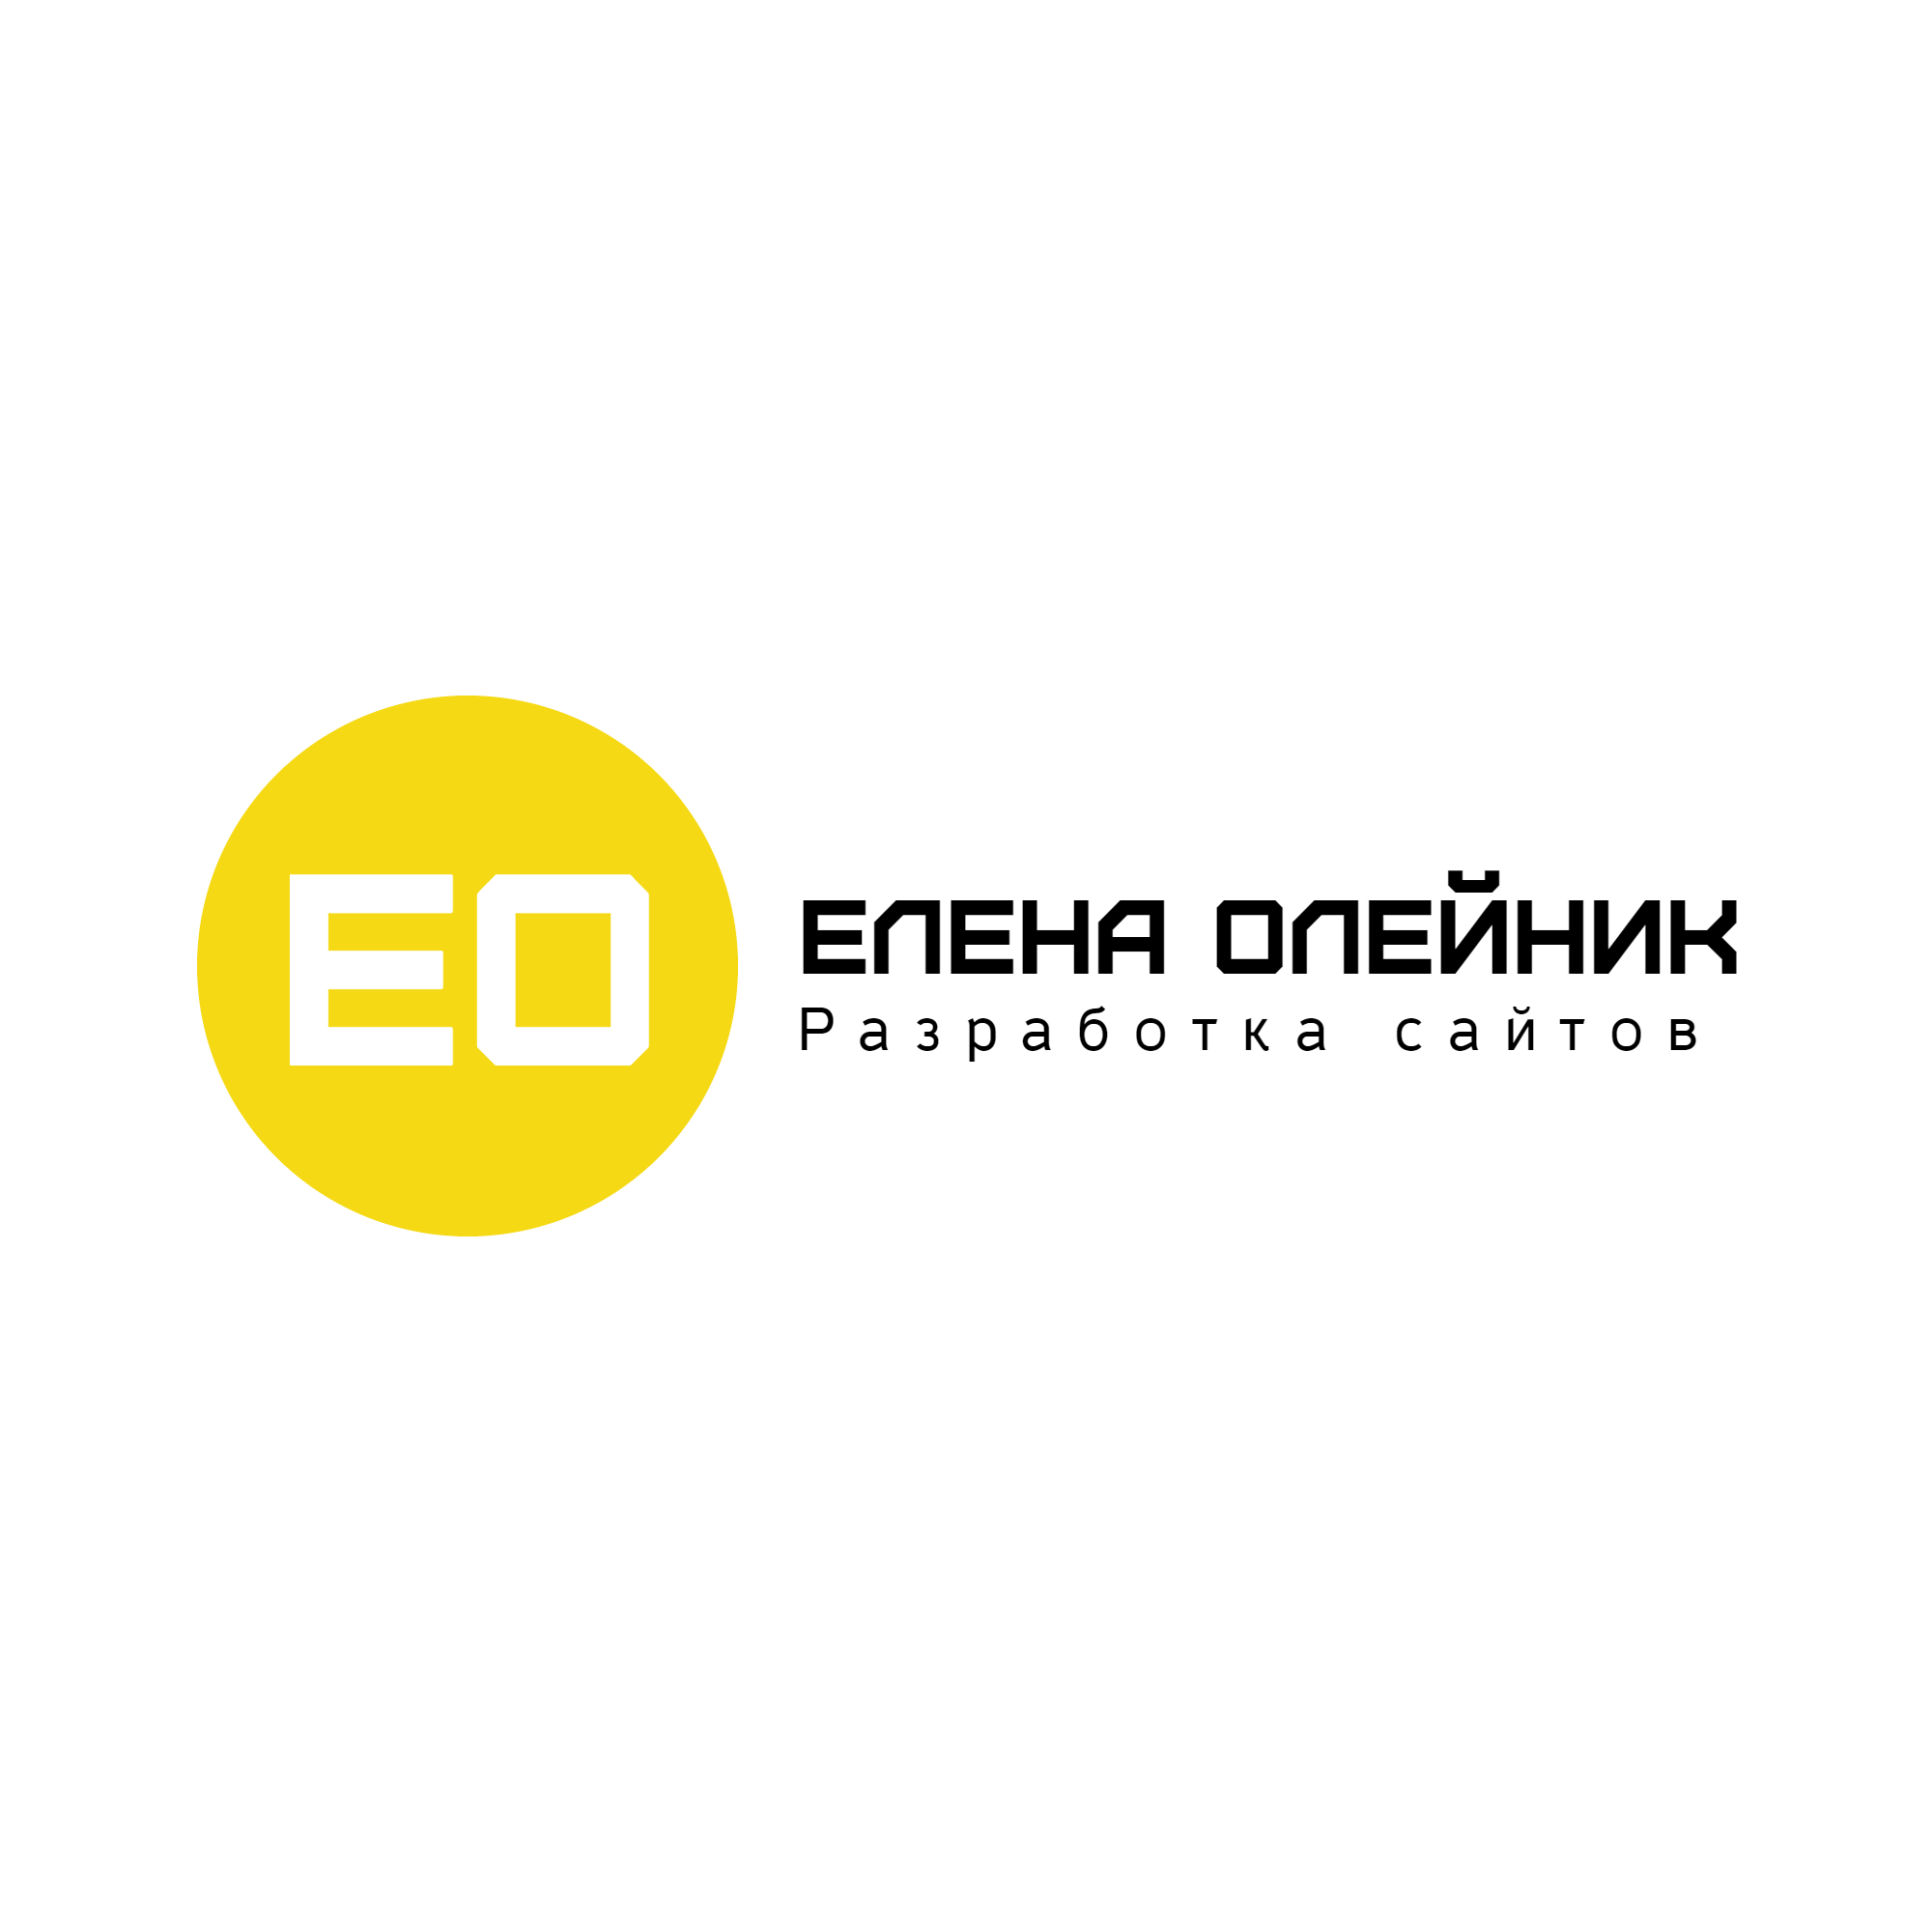 Логотип Разработка сайтов от Елены Олейник